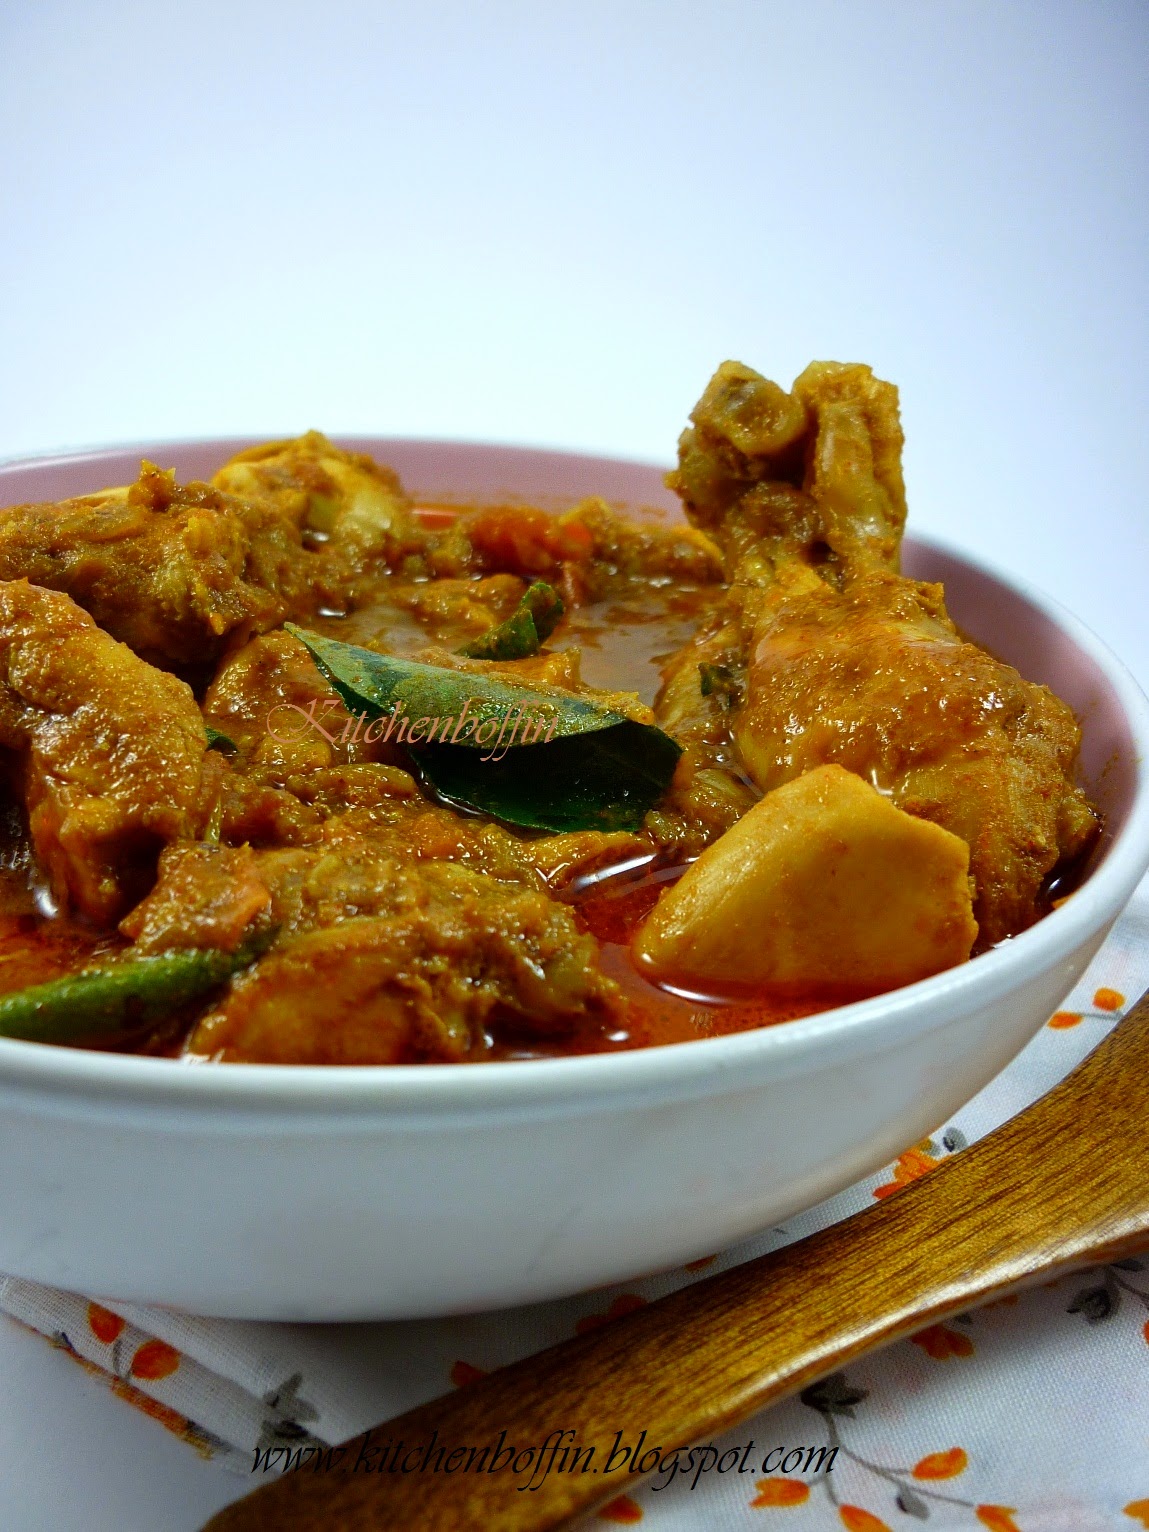 Kitchen Boffin: Malabar Chicken Curry